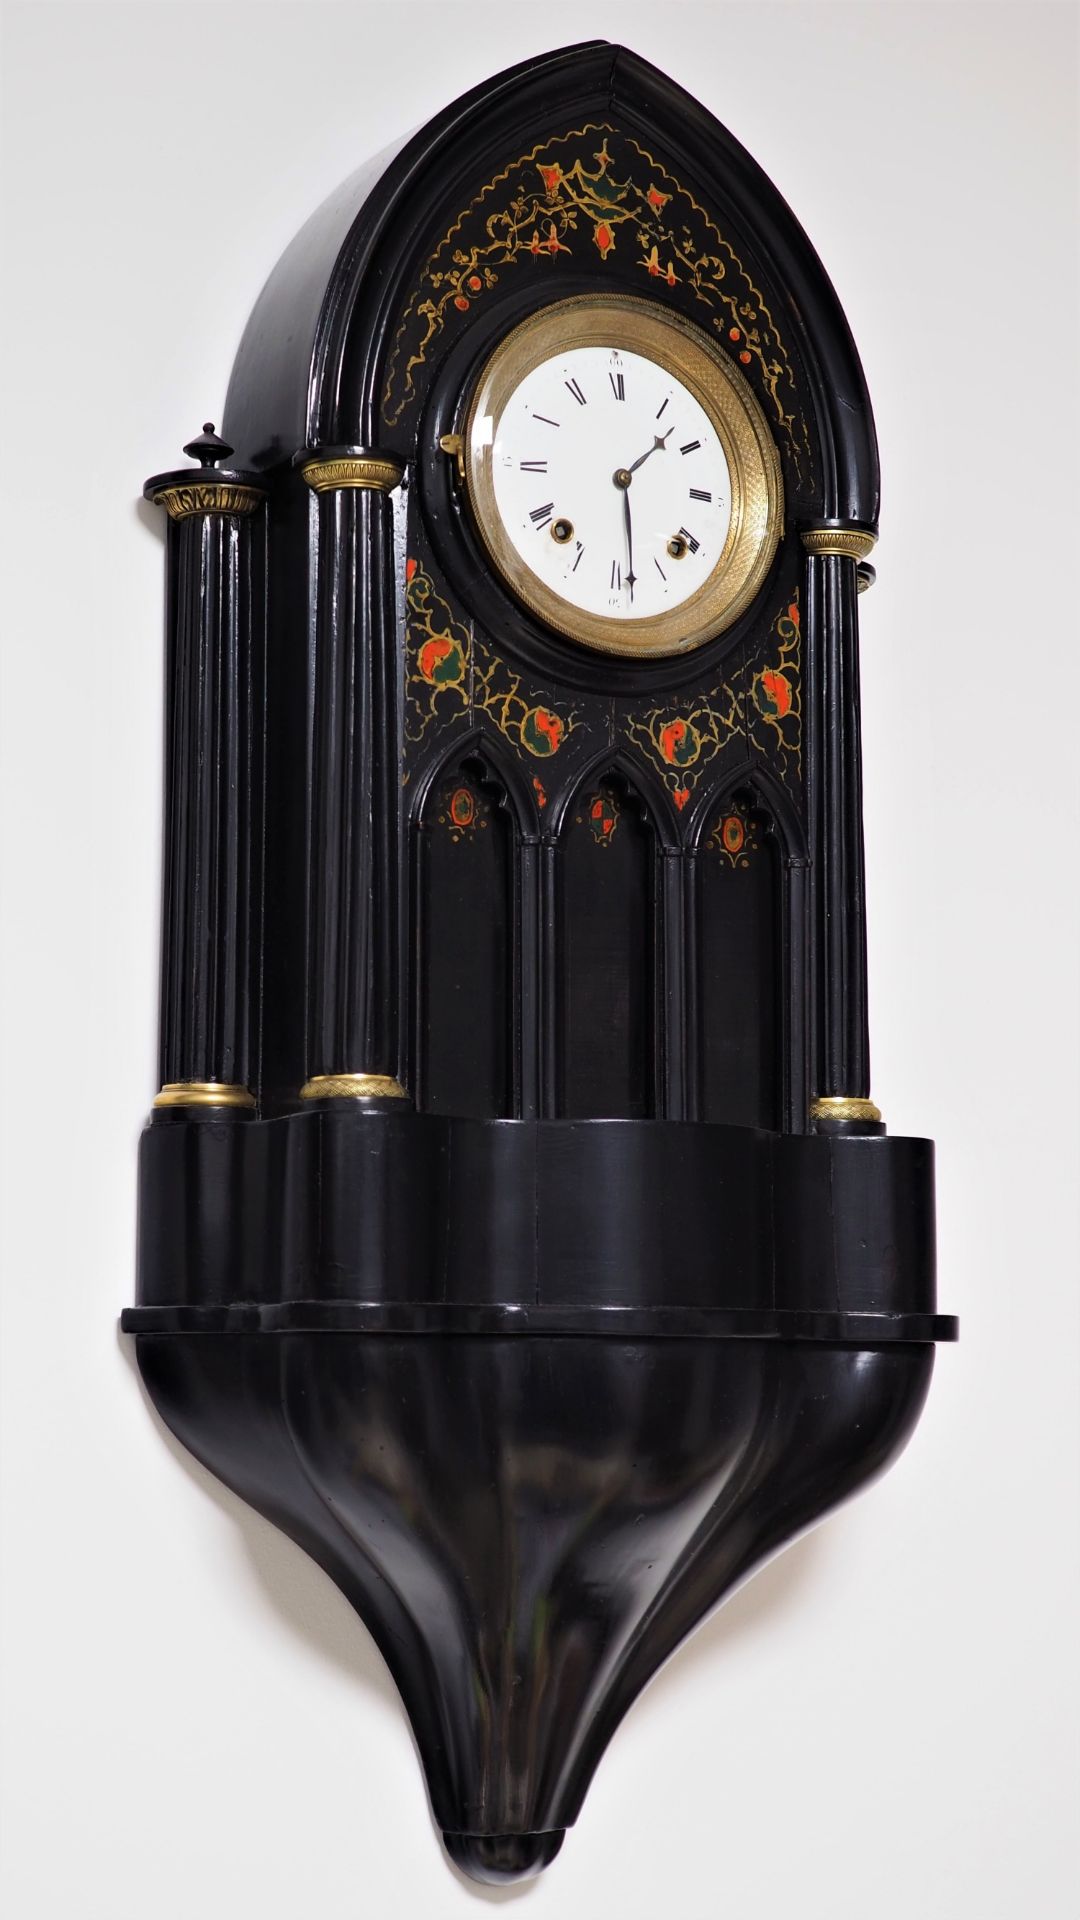 Viennese cathedral clock, around 1850.